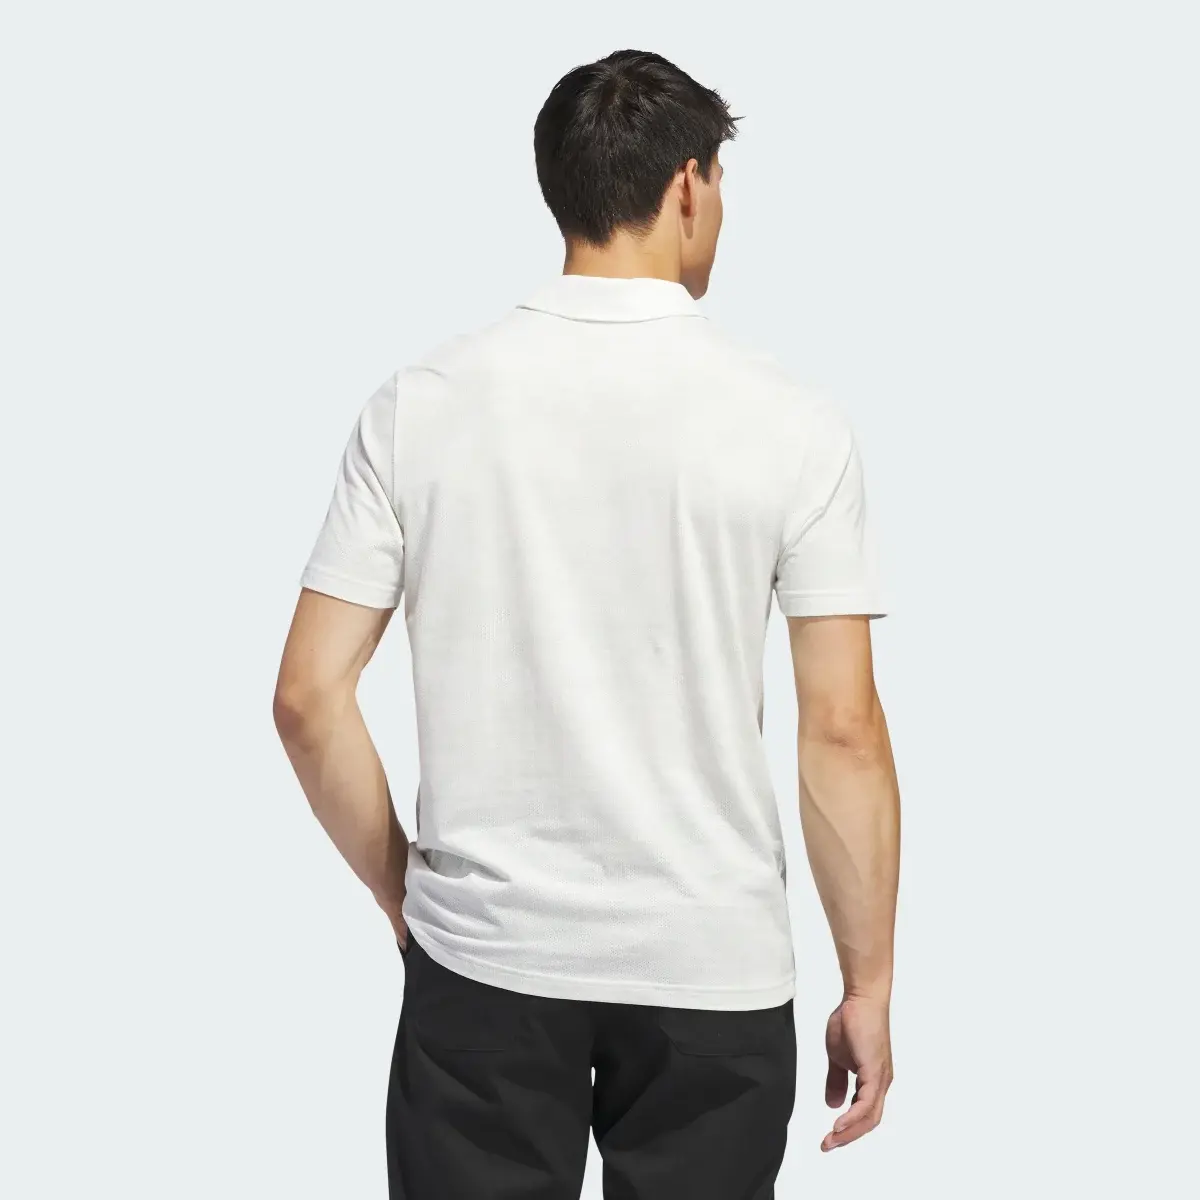 Adidas Go-To Printed Mesh Polo Shirt. 3